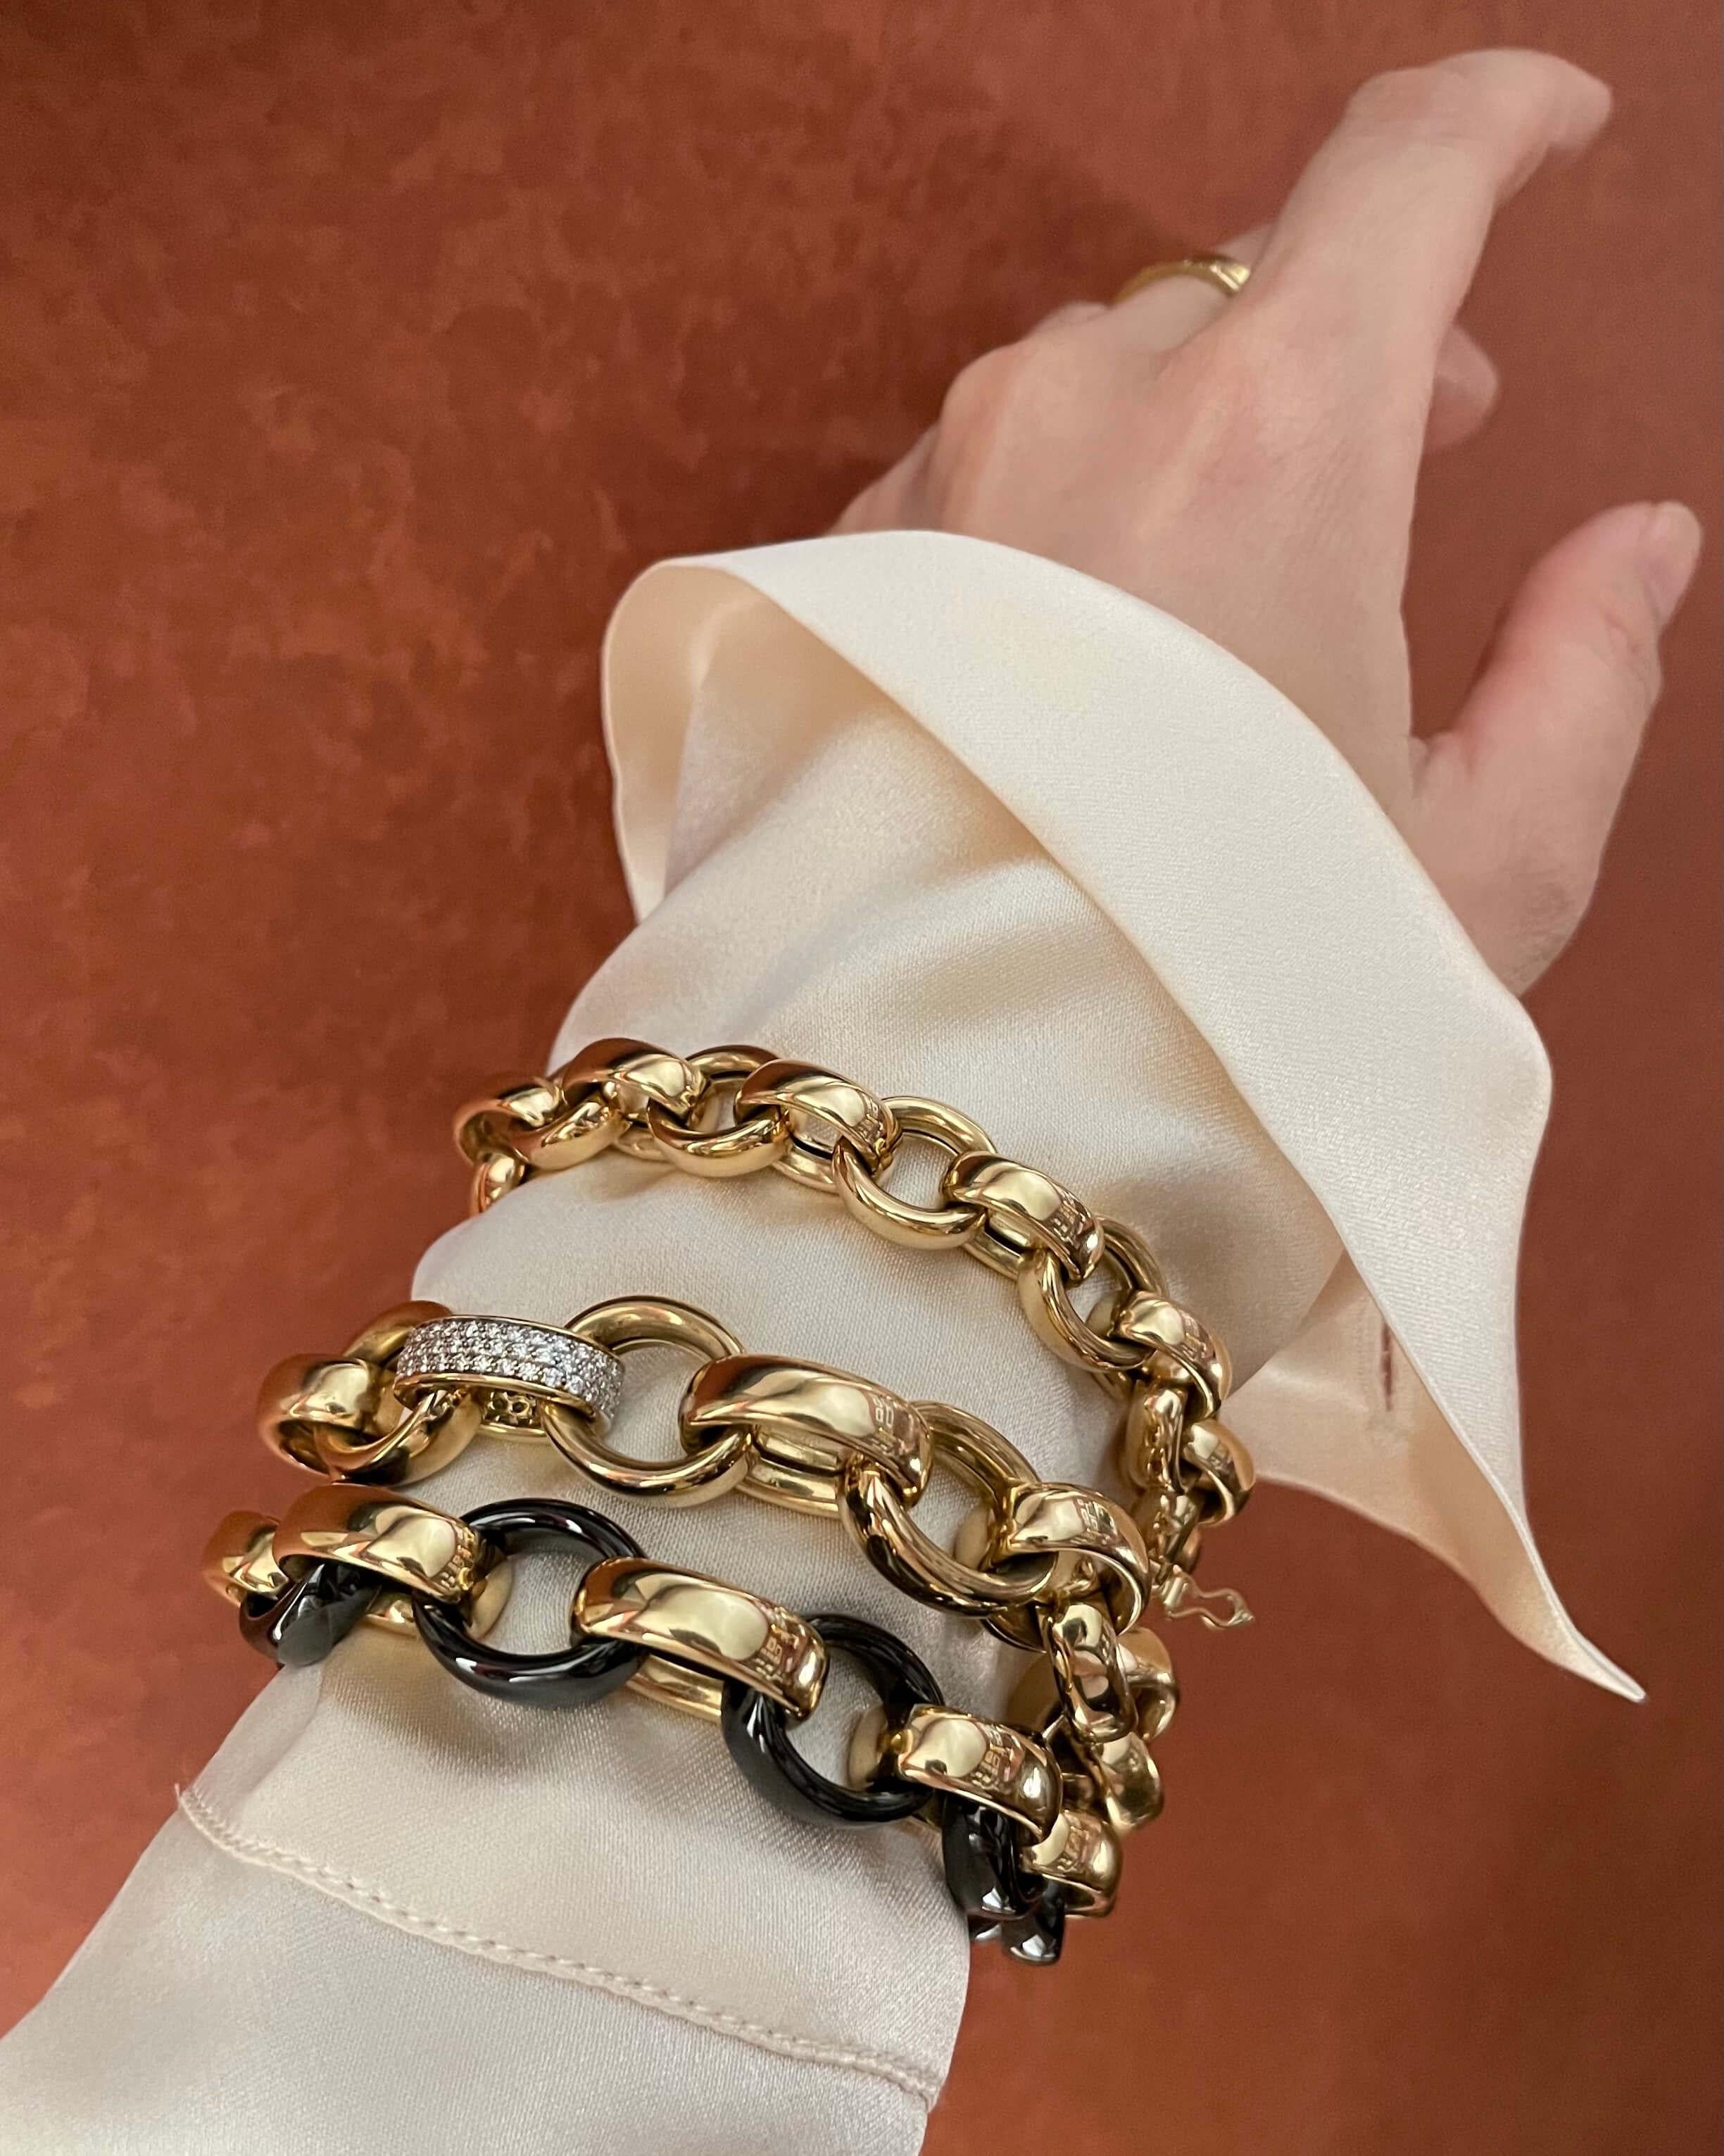 Dieses Monica Rich Kosann Armband aus 18-karätigem Gold kann allein getragen werden oder als dramatischer Ausgangspunkt für den Aufbau Ihrer Charme-Sammlung dienen.
Unsere schwerste und massivste Kette wurde aktualisiert, um diesem klassischen Stil